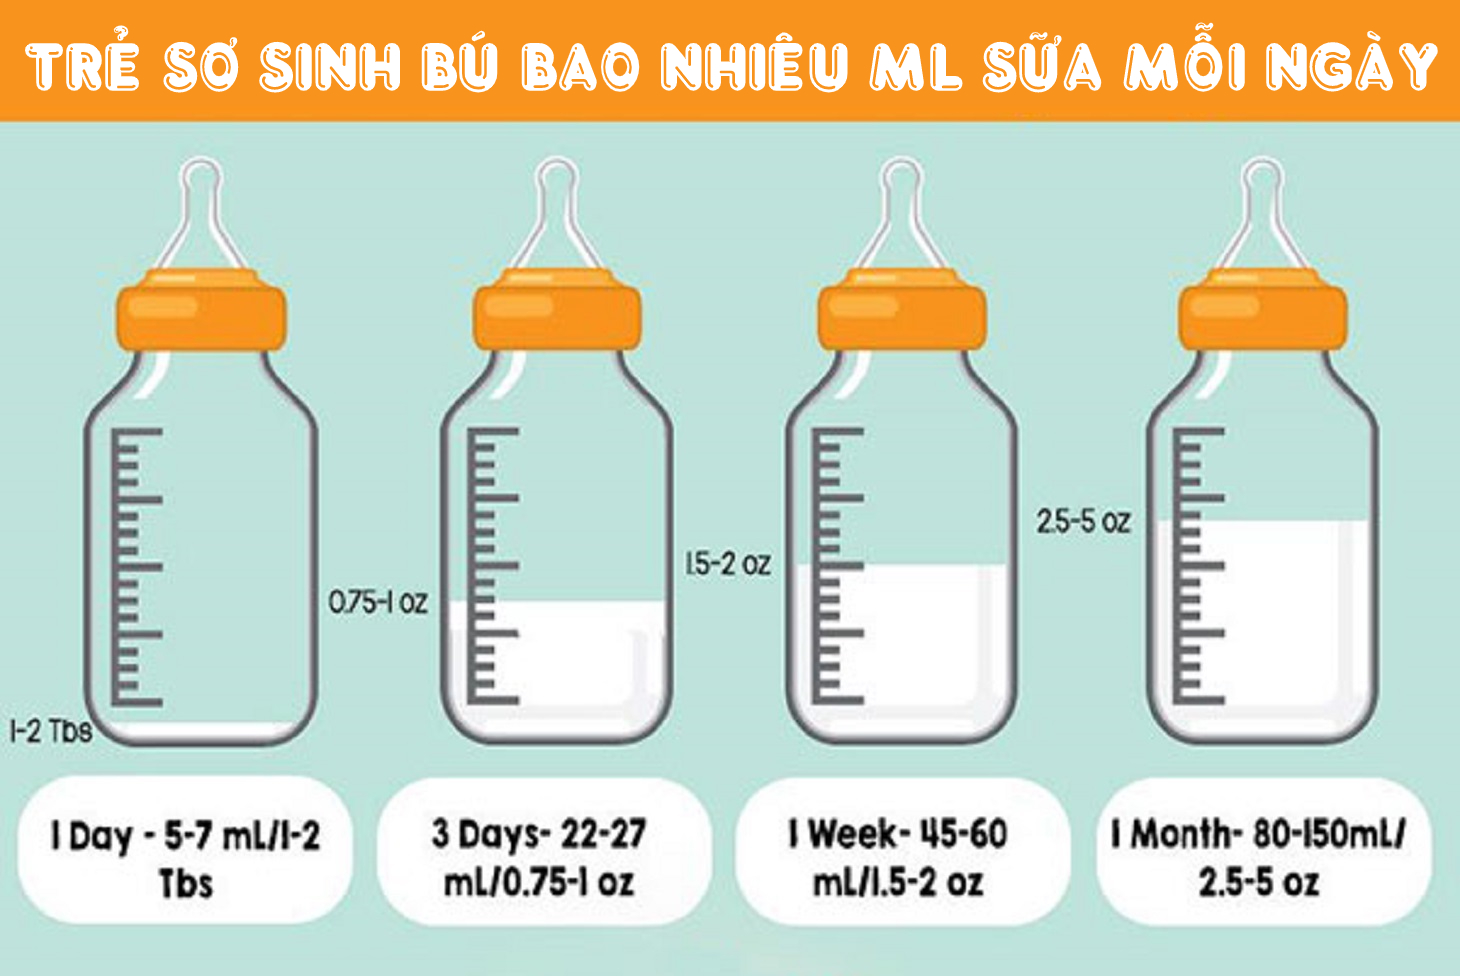 Trẻ sơ sinh bú bao nhiêu lần 1 ngày là đủ? | TCI Hospital